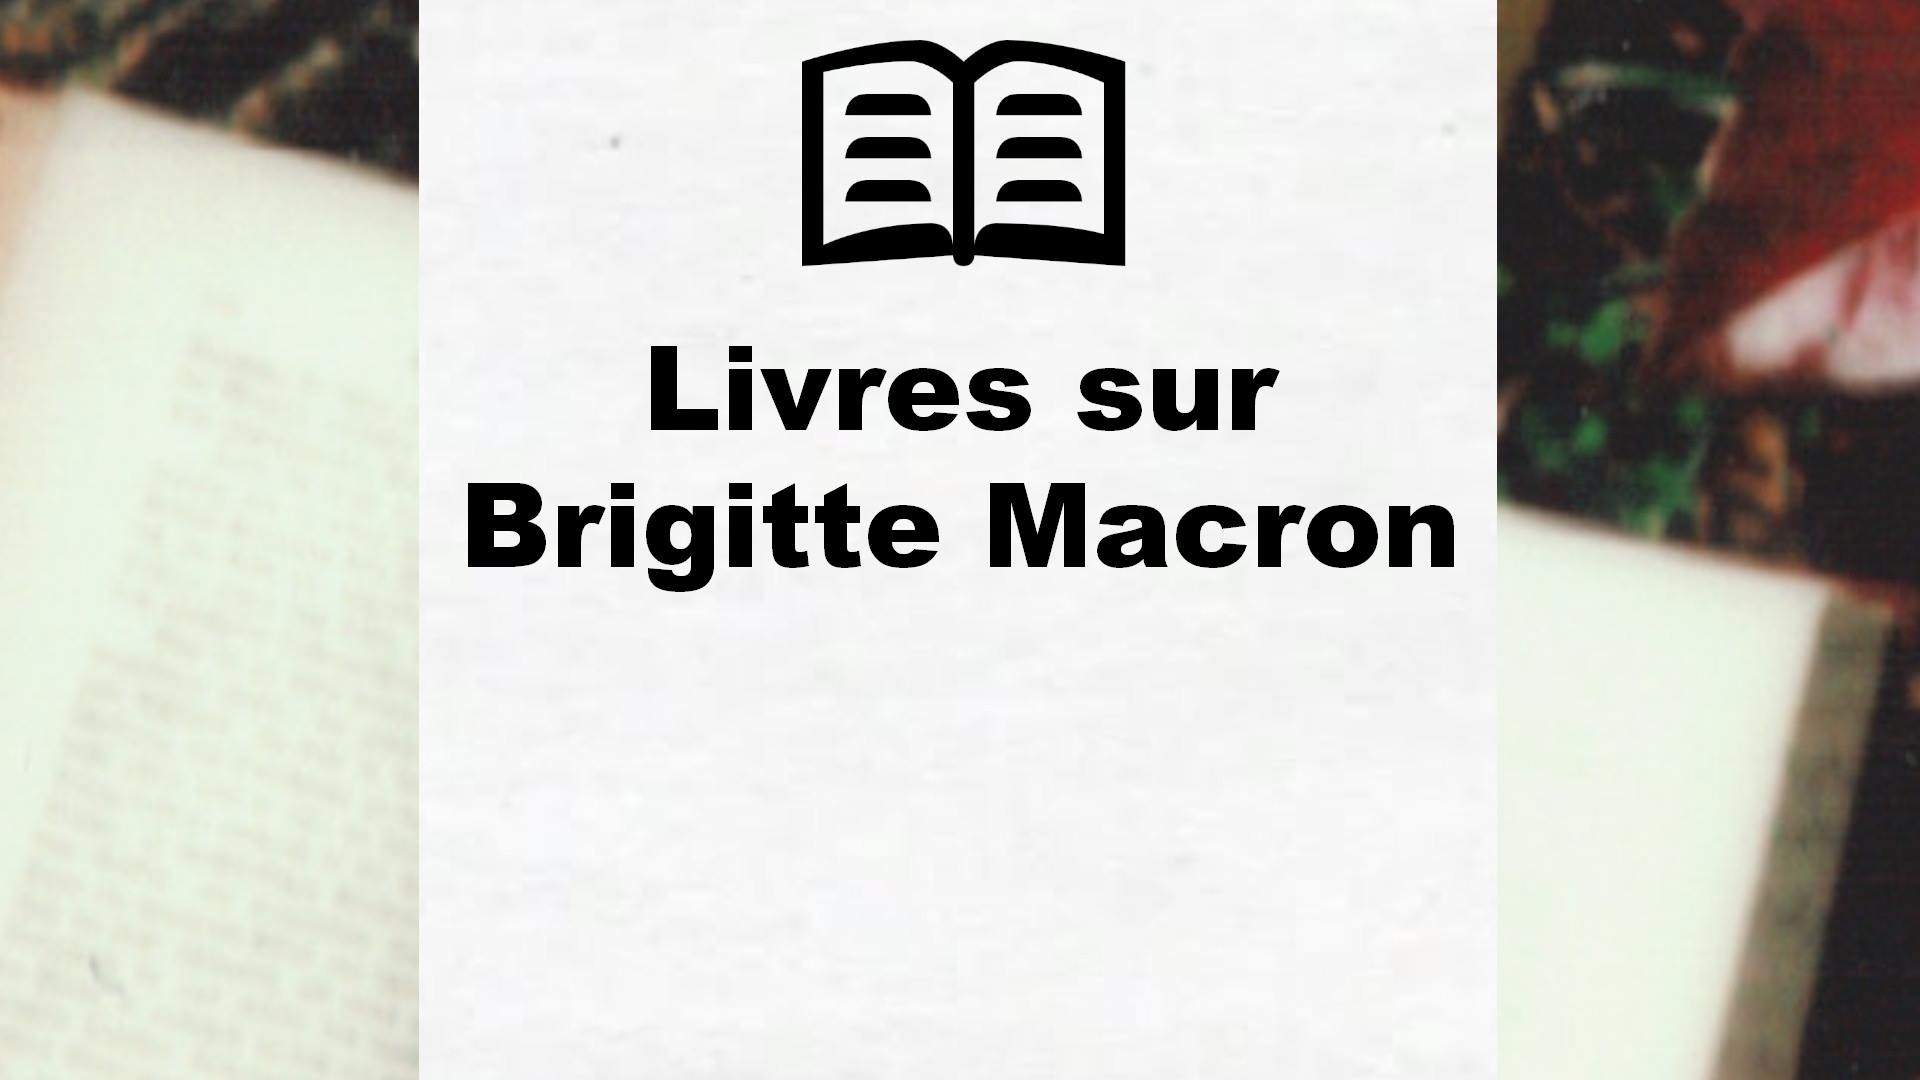 Livres sur Brigitte Macron